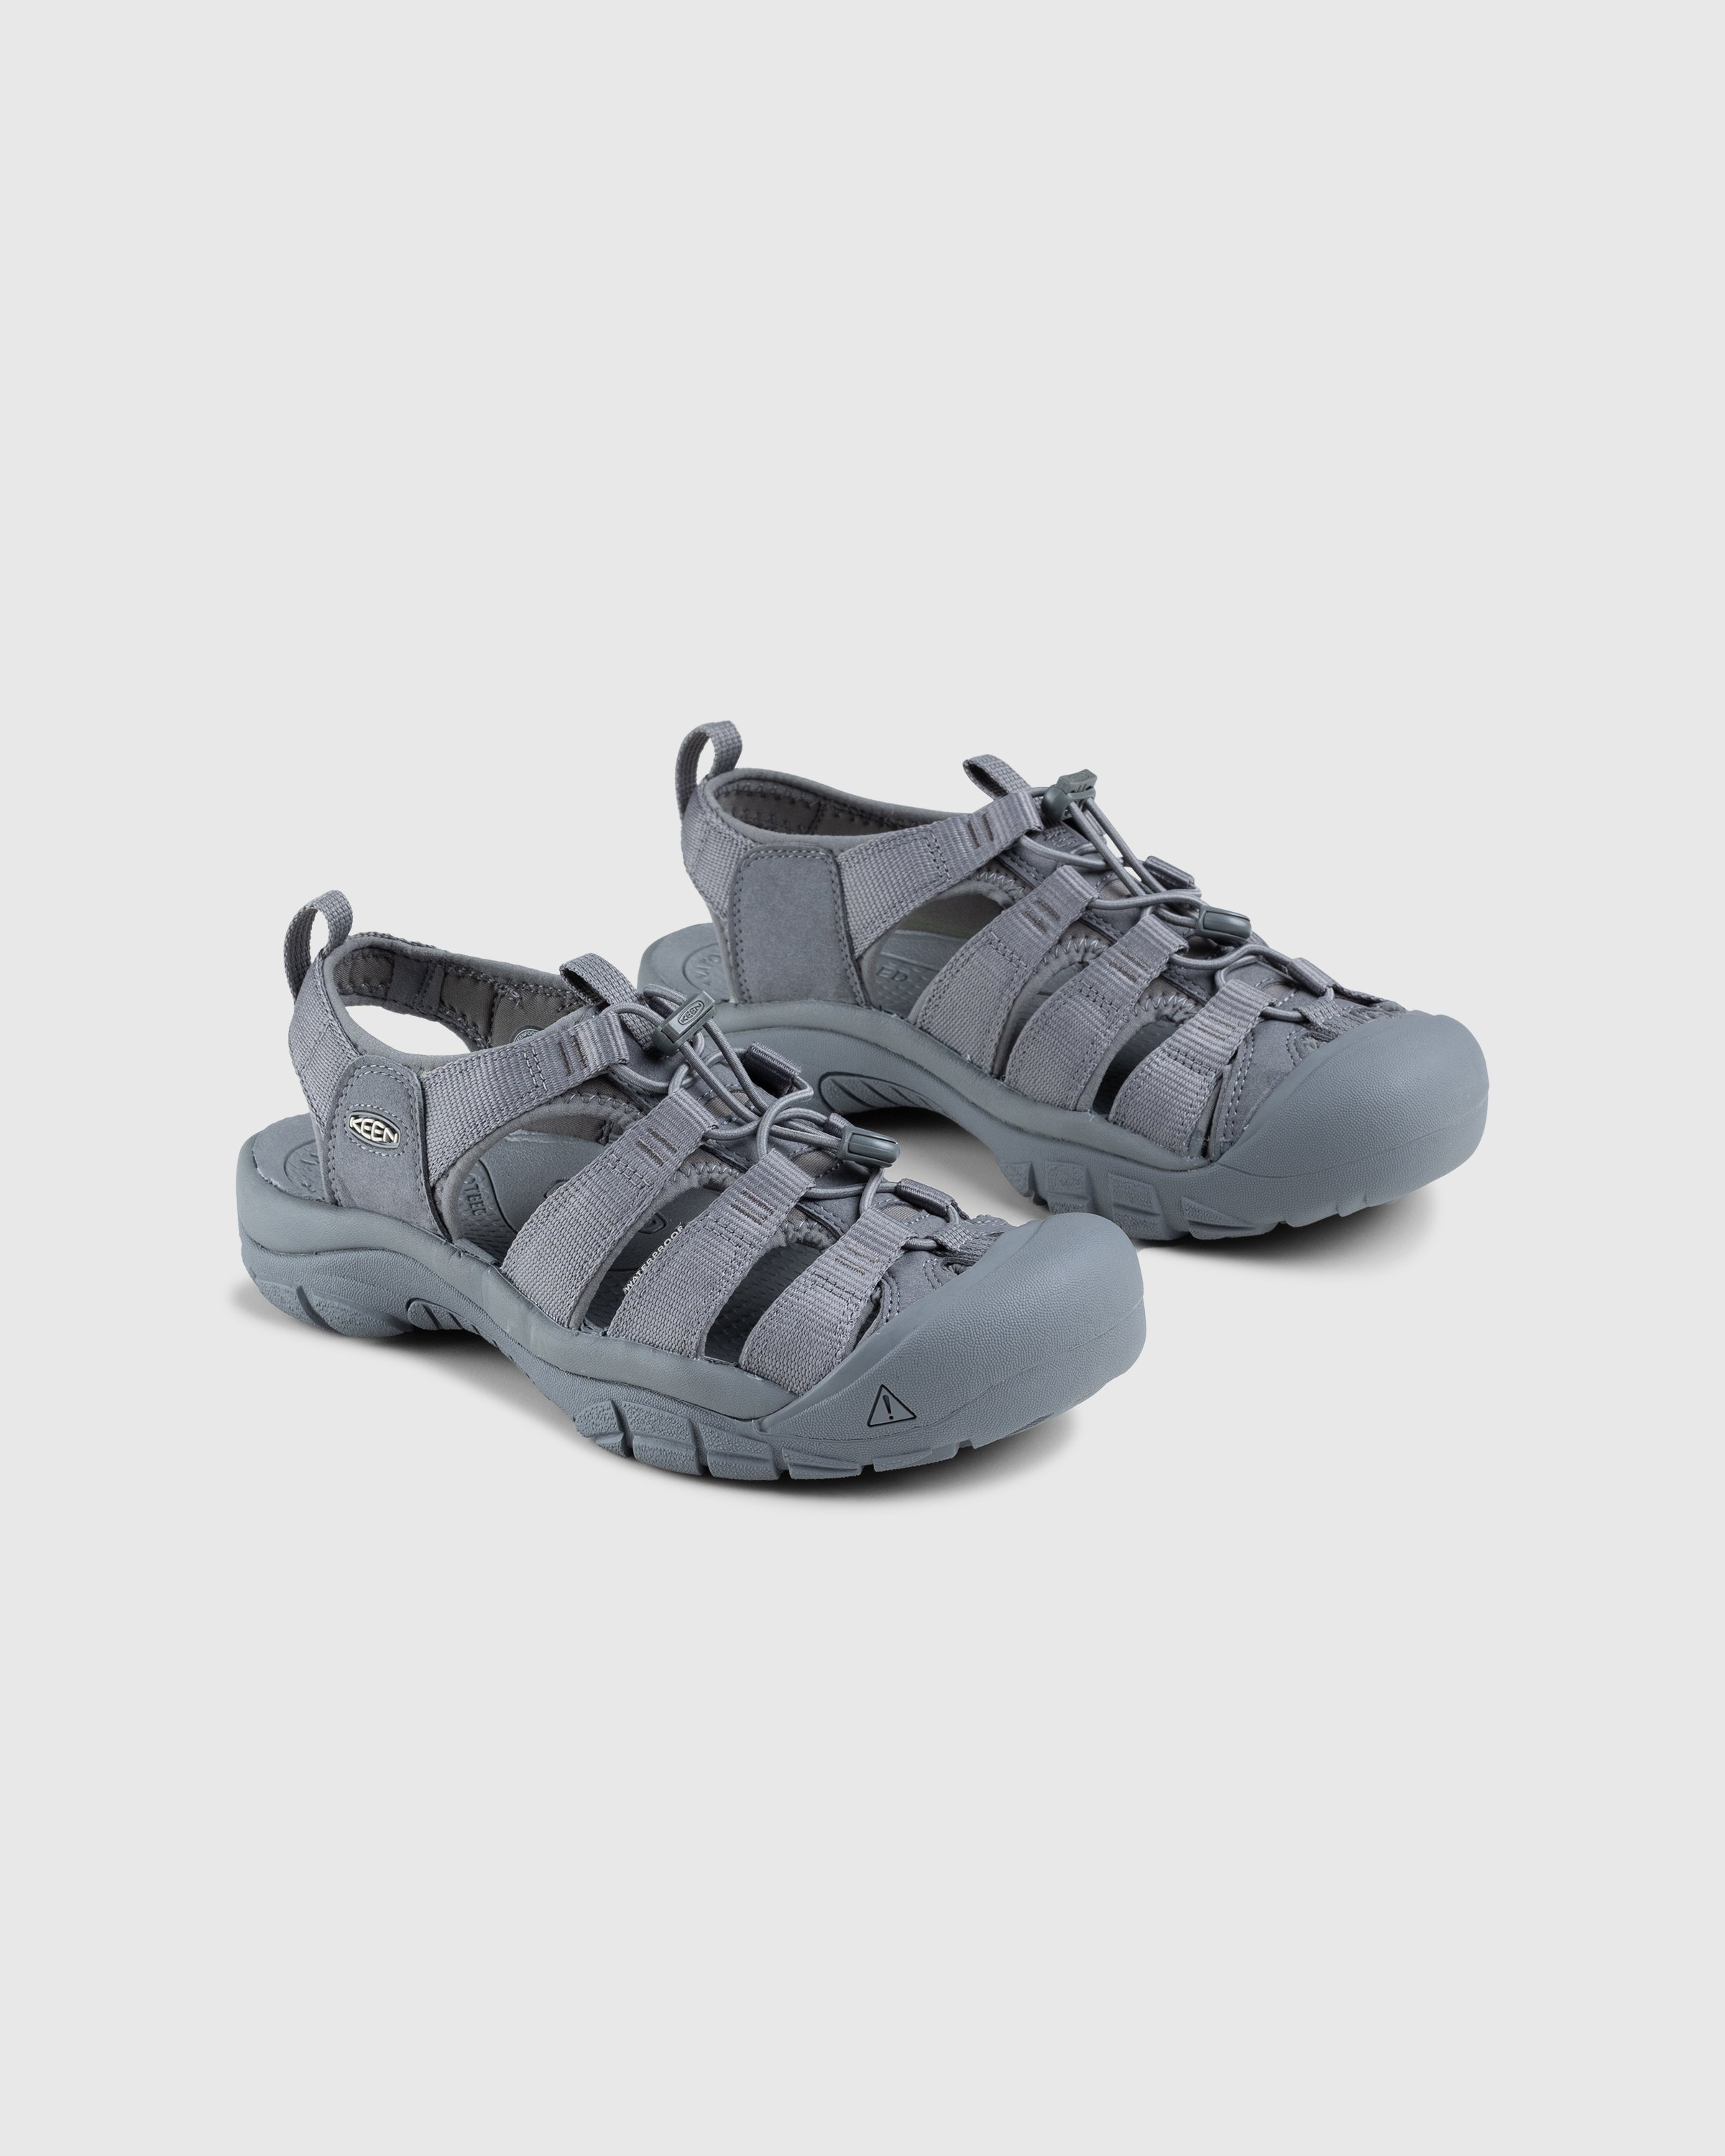 Keen - Newport H2 Monochrome/Steel Grey - Footwear - Grey - Image 3